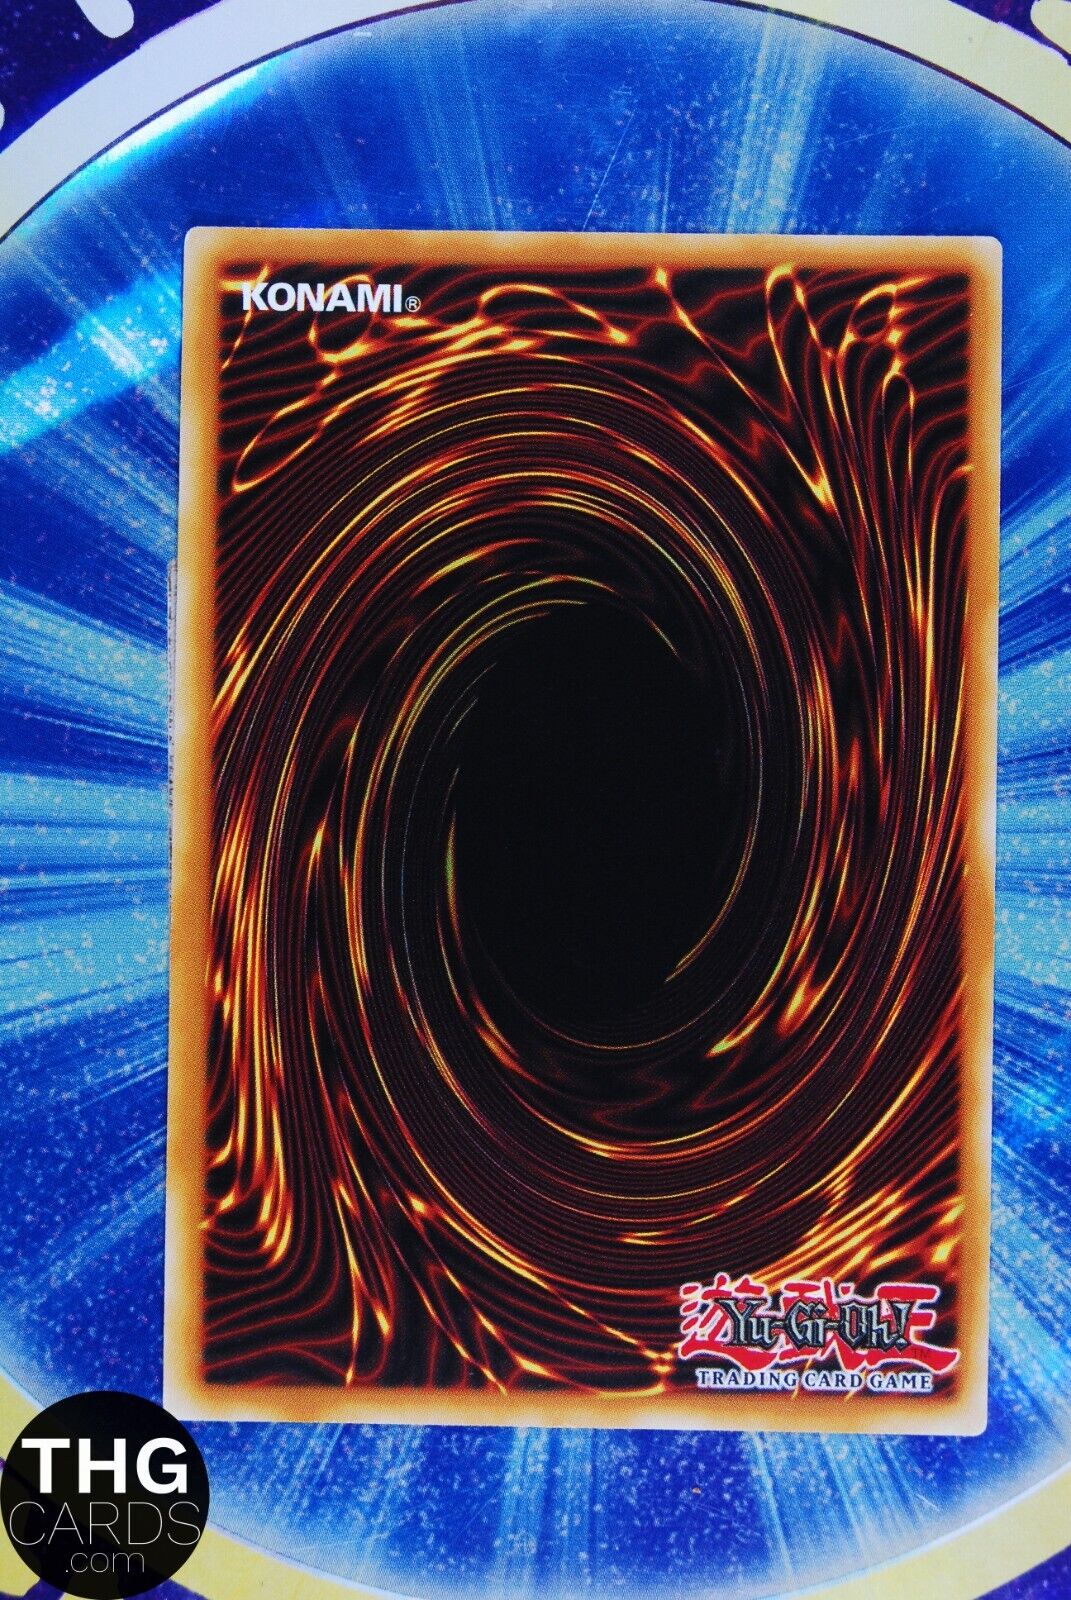 Djinn Presider of Rituals THSF-EN037 Super Rare Yugioh Card